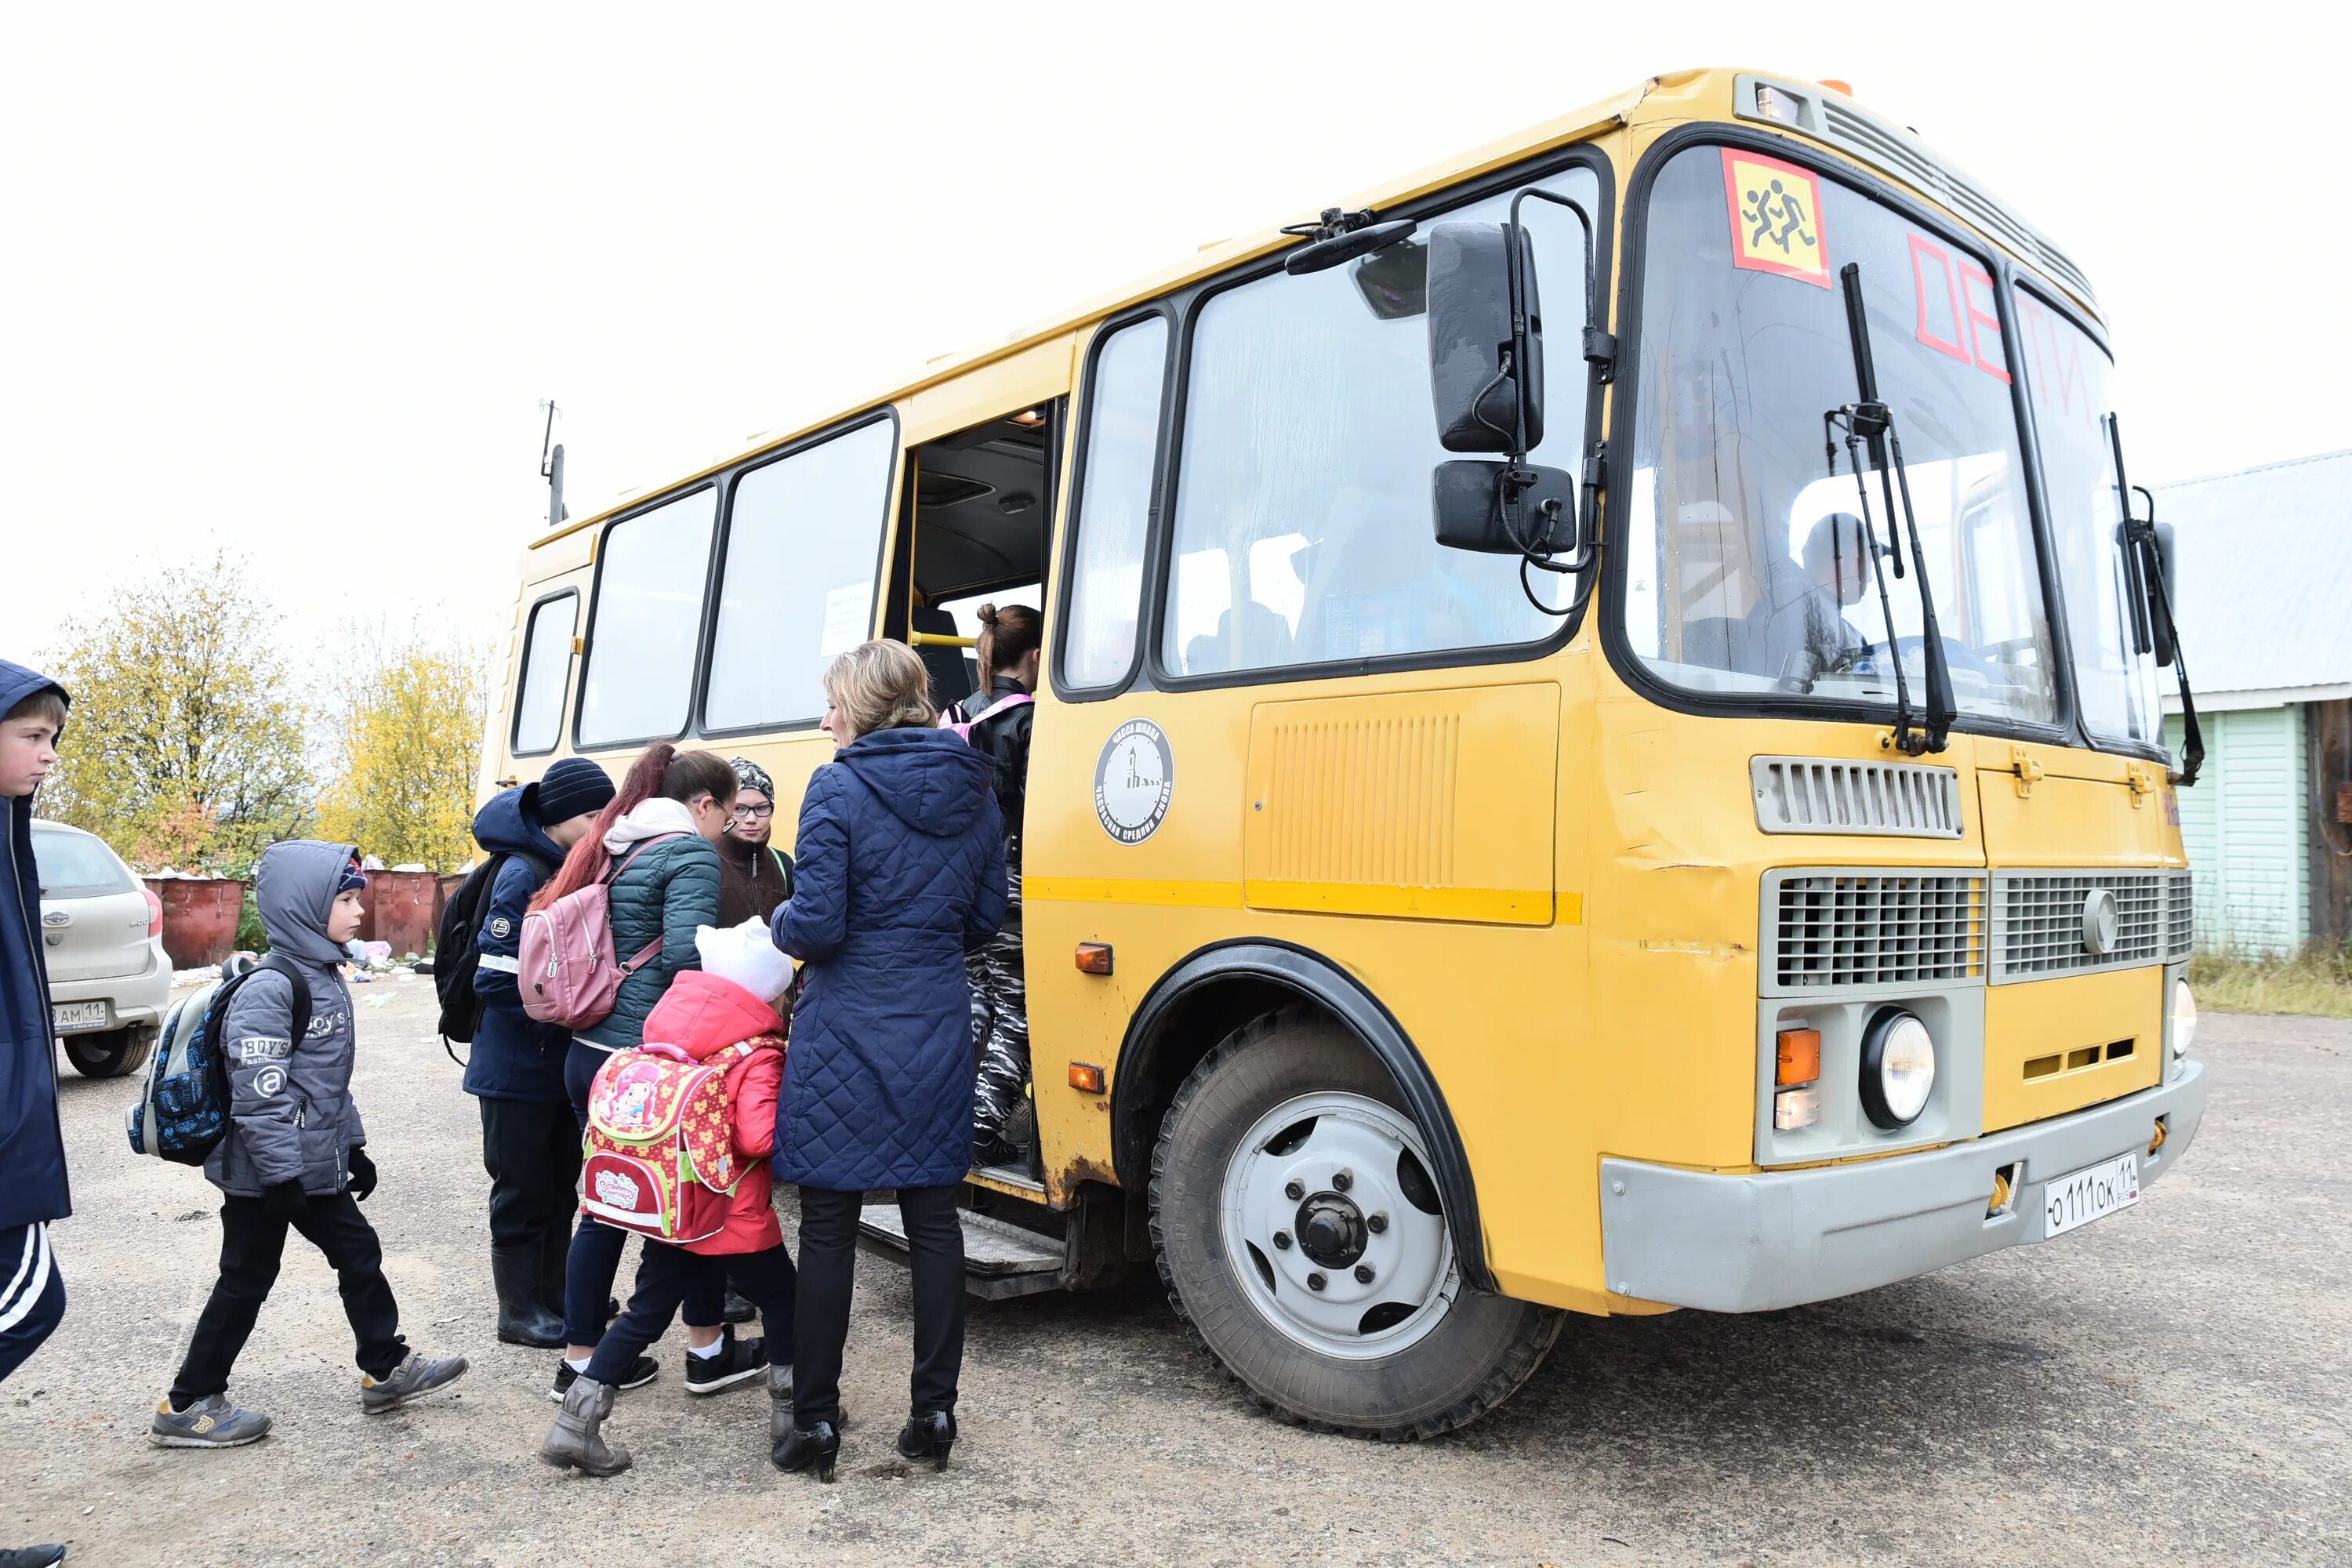 Перевозка детей автобусом заказ. Автобус для детей. Школьный автобус дети. Школьные автобусы в России. Автобус для перевозки детей.